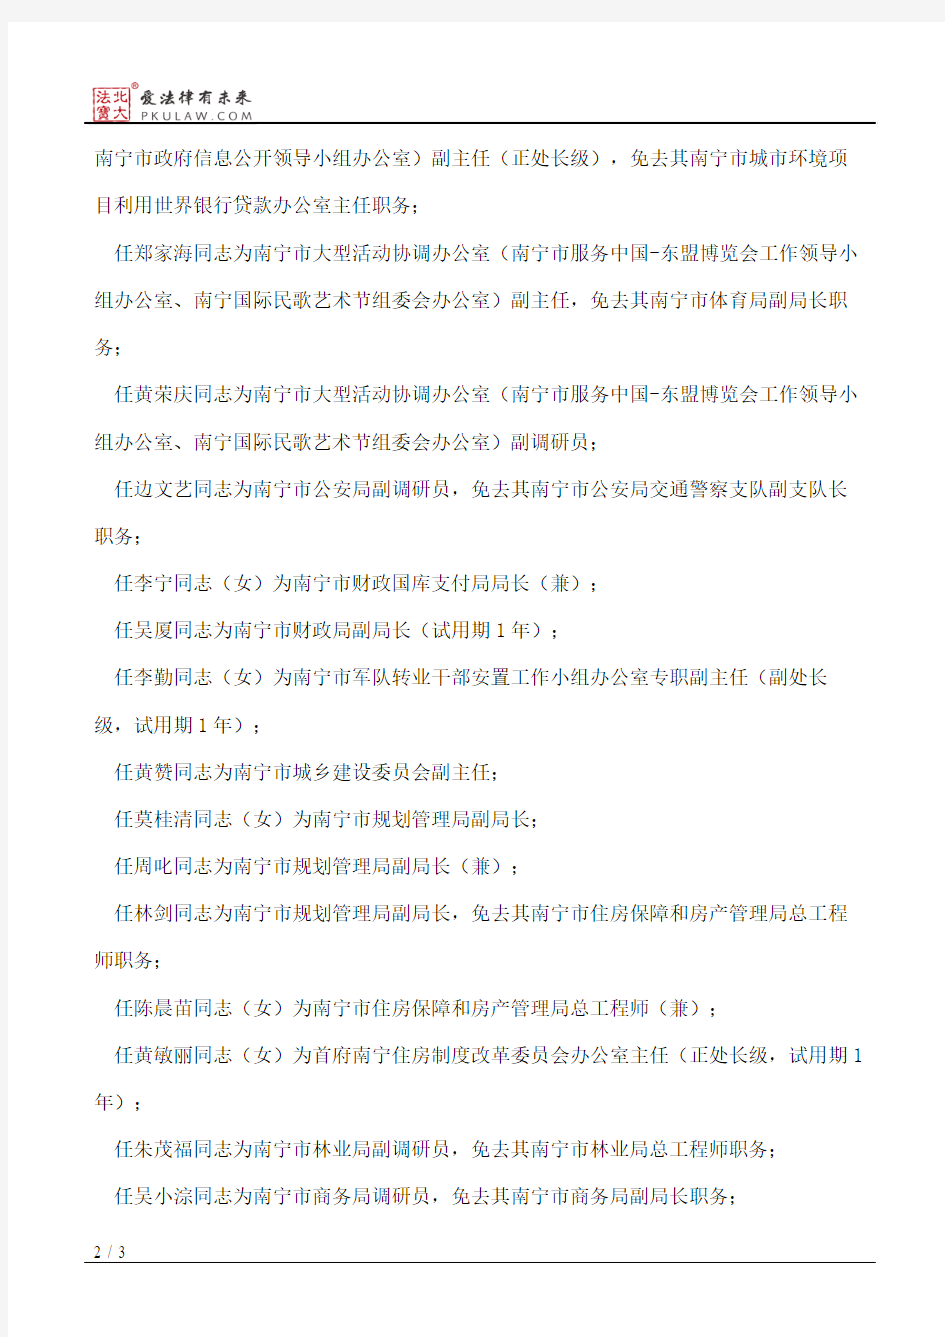 南宁市人民政府关于黄孝林等同志任免职的通知